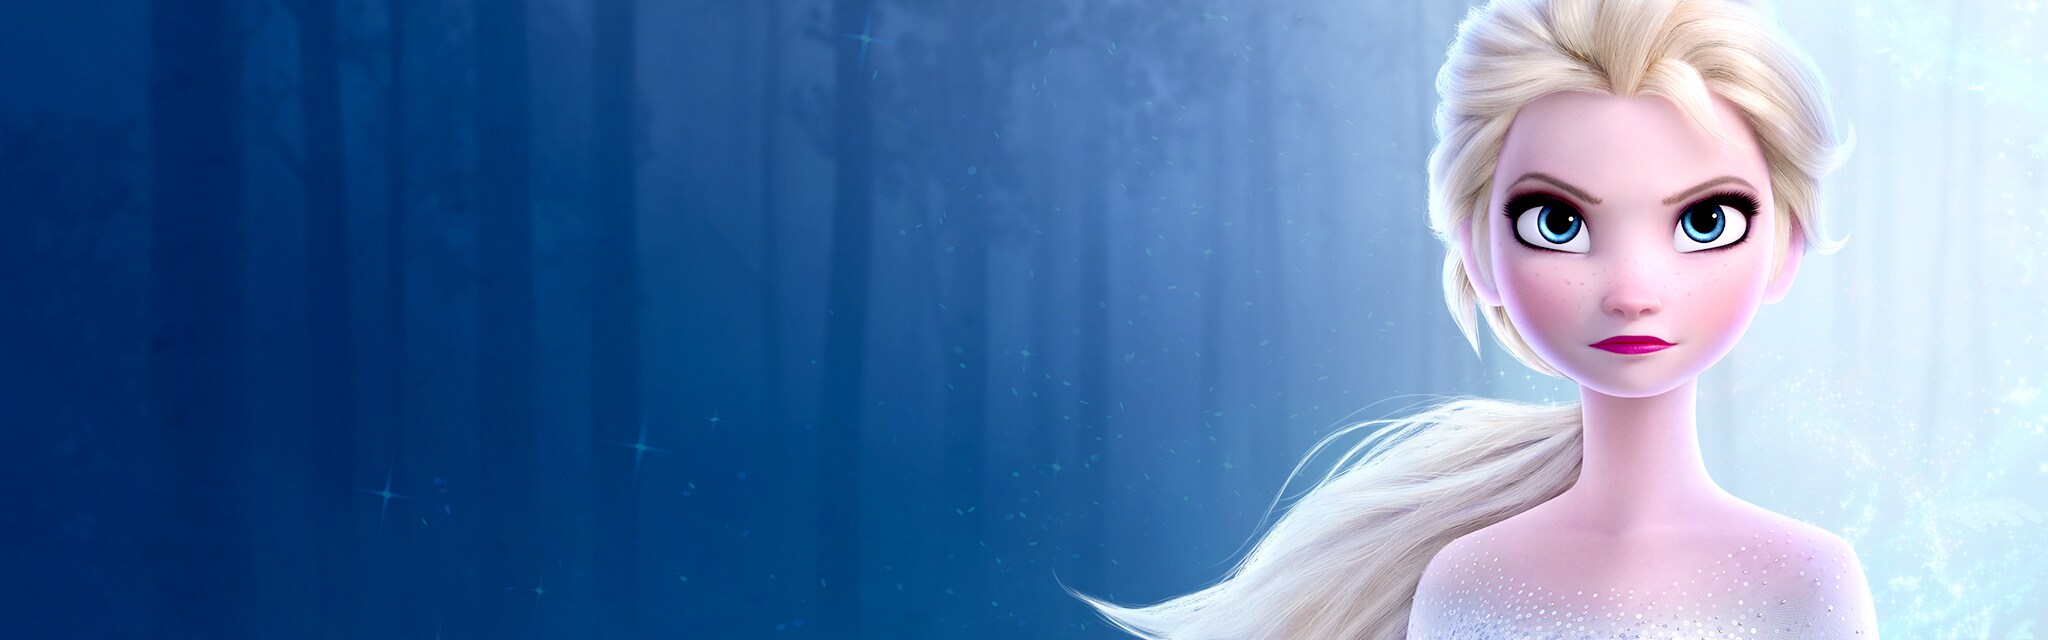 Elsa | Disney Frozen